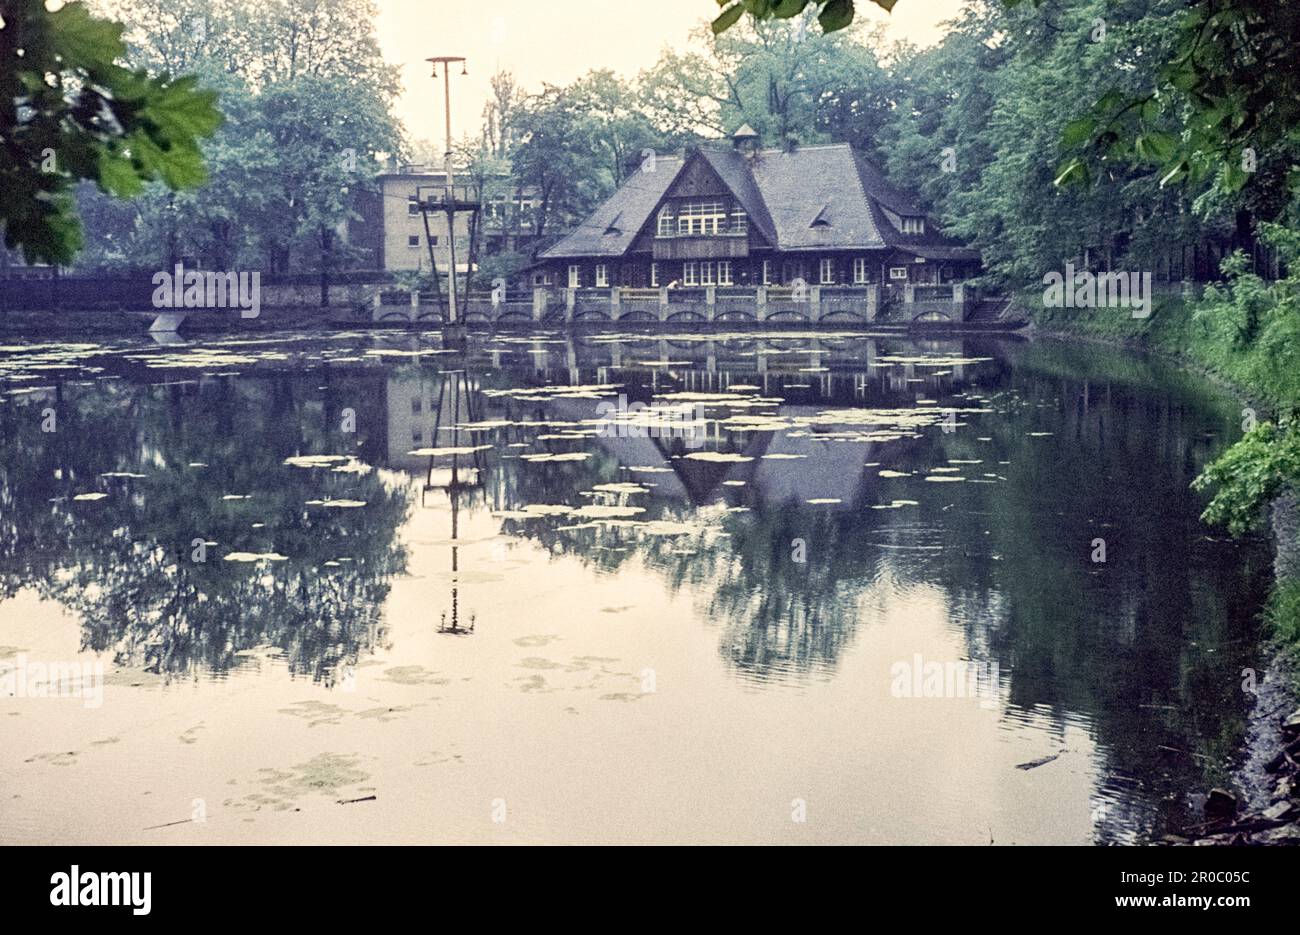 Castle Pond und Ice House, wo die Bevölkerung im Winter Schlittschuhlaufen ging. Pascheke, Stadtzentrum Opole, Woiwodschaft Opole, Polen, 1962 Stockfoto